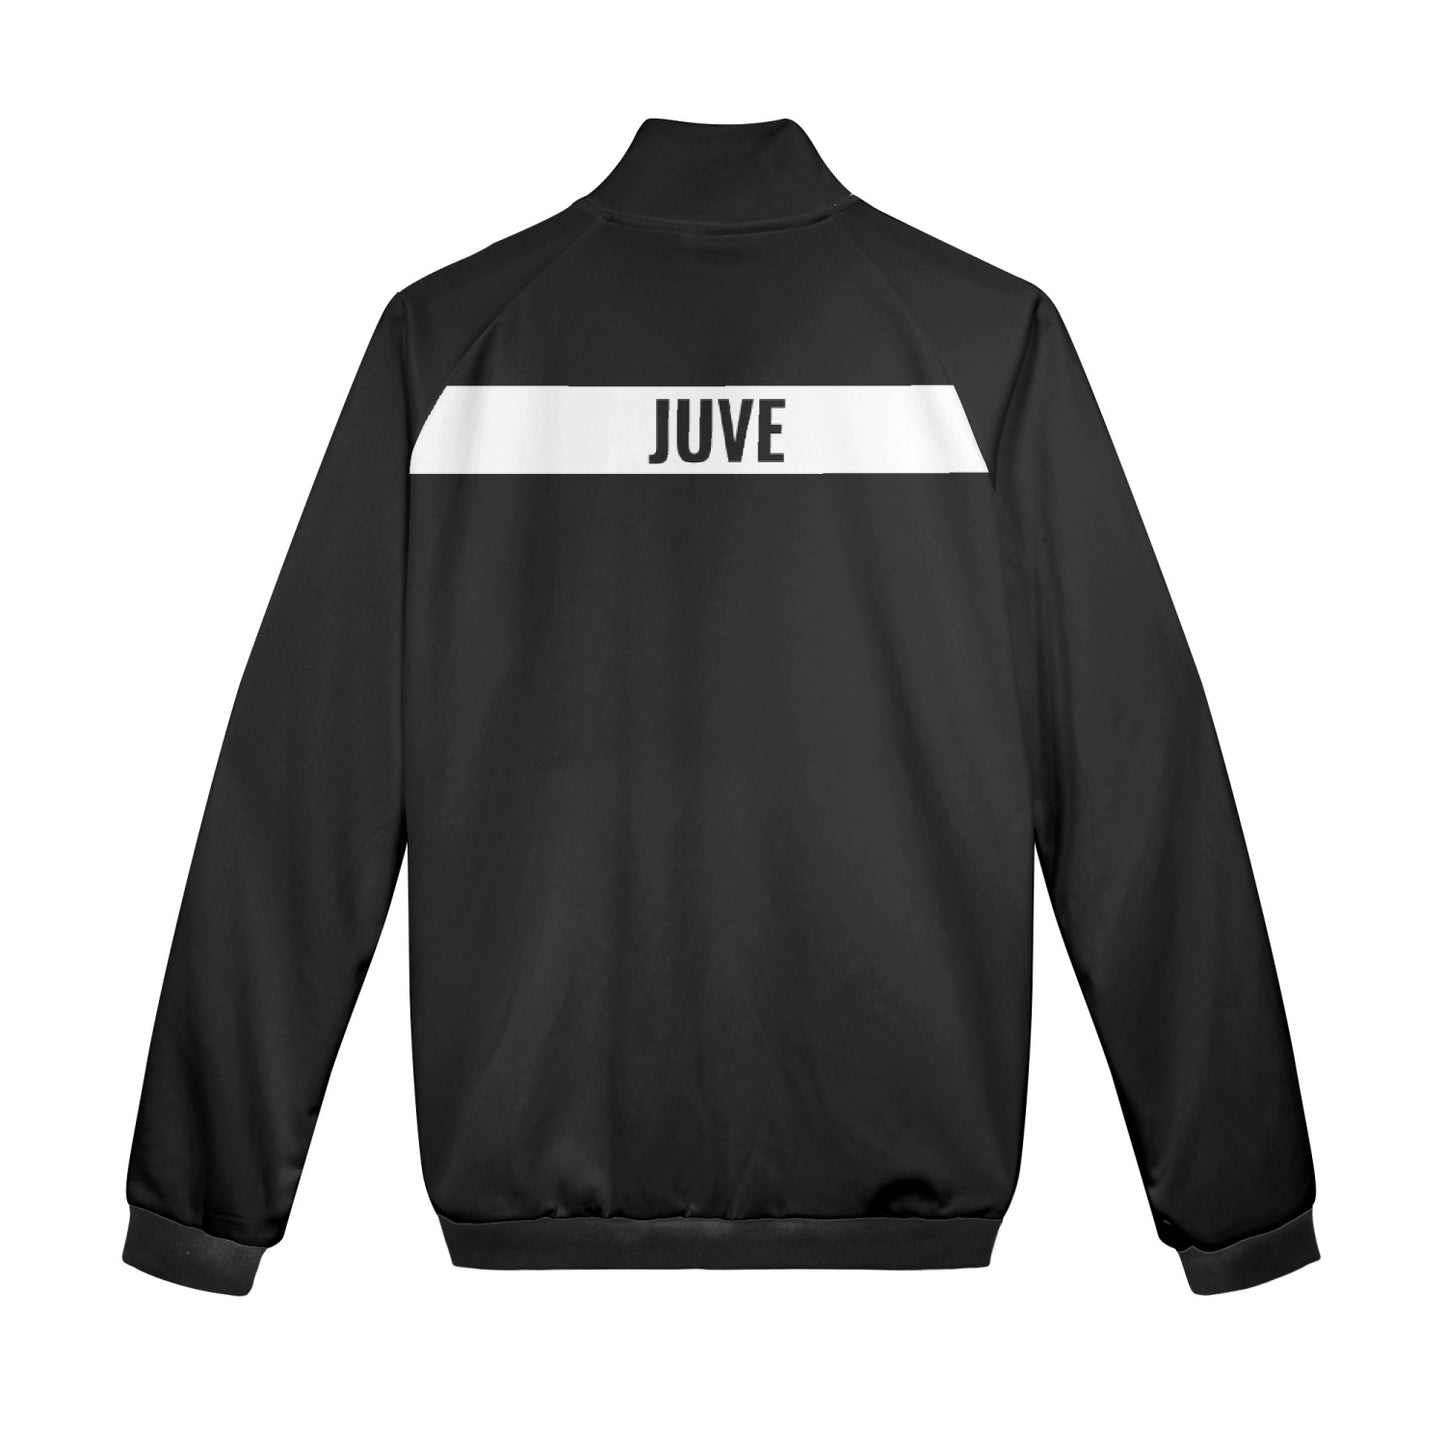 Juve - sport Jacket